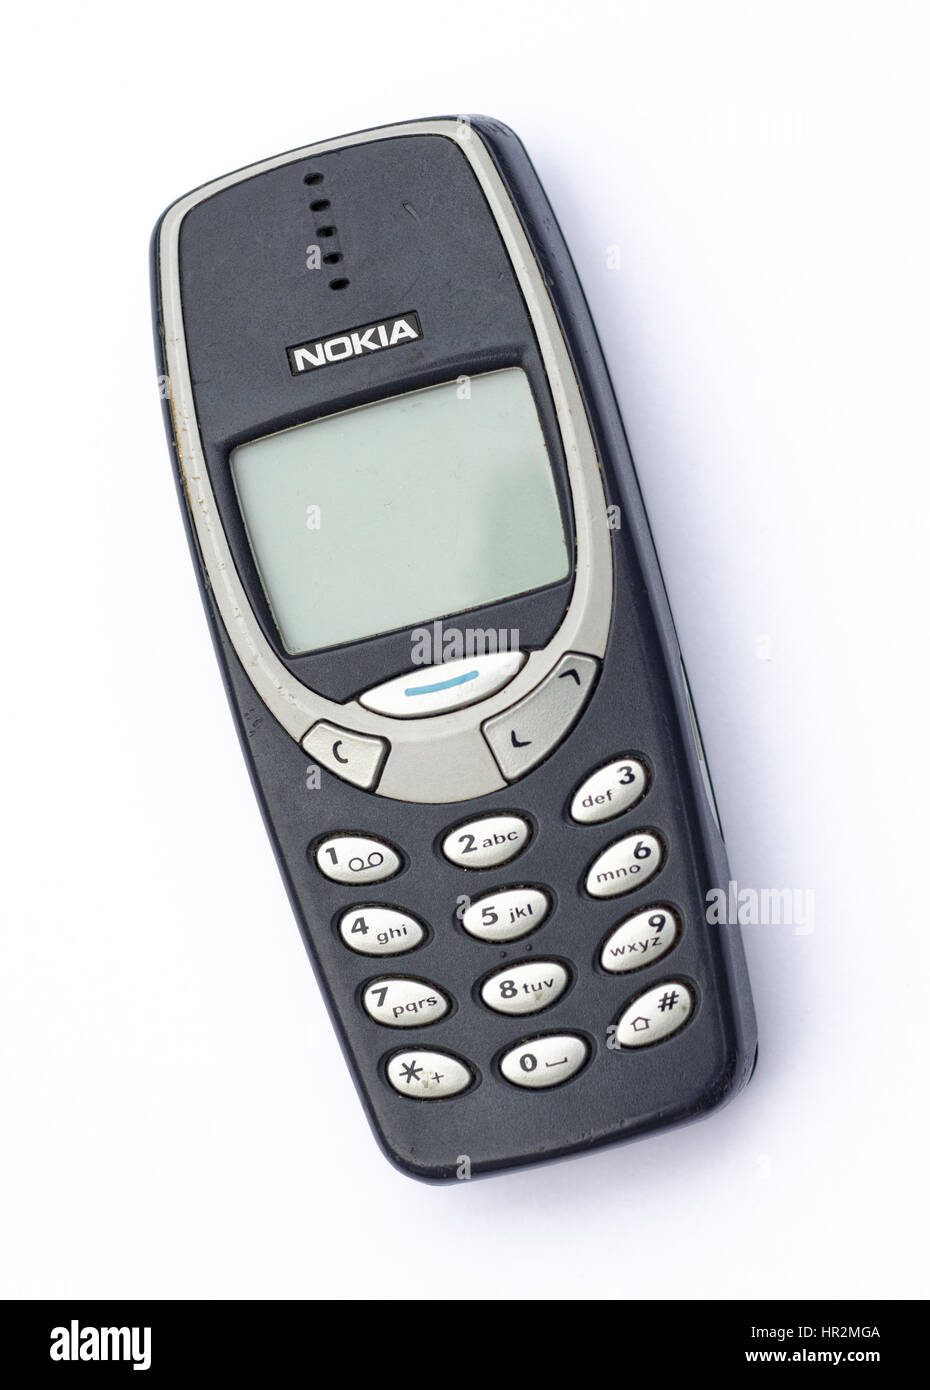 Nokia 3310 telefono cellulare, uno di Nokia per i telefoni cellulari più popolare Foto Stock